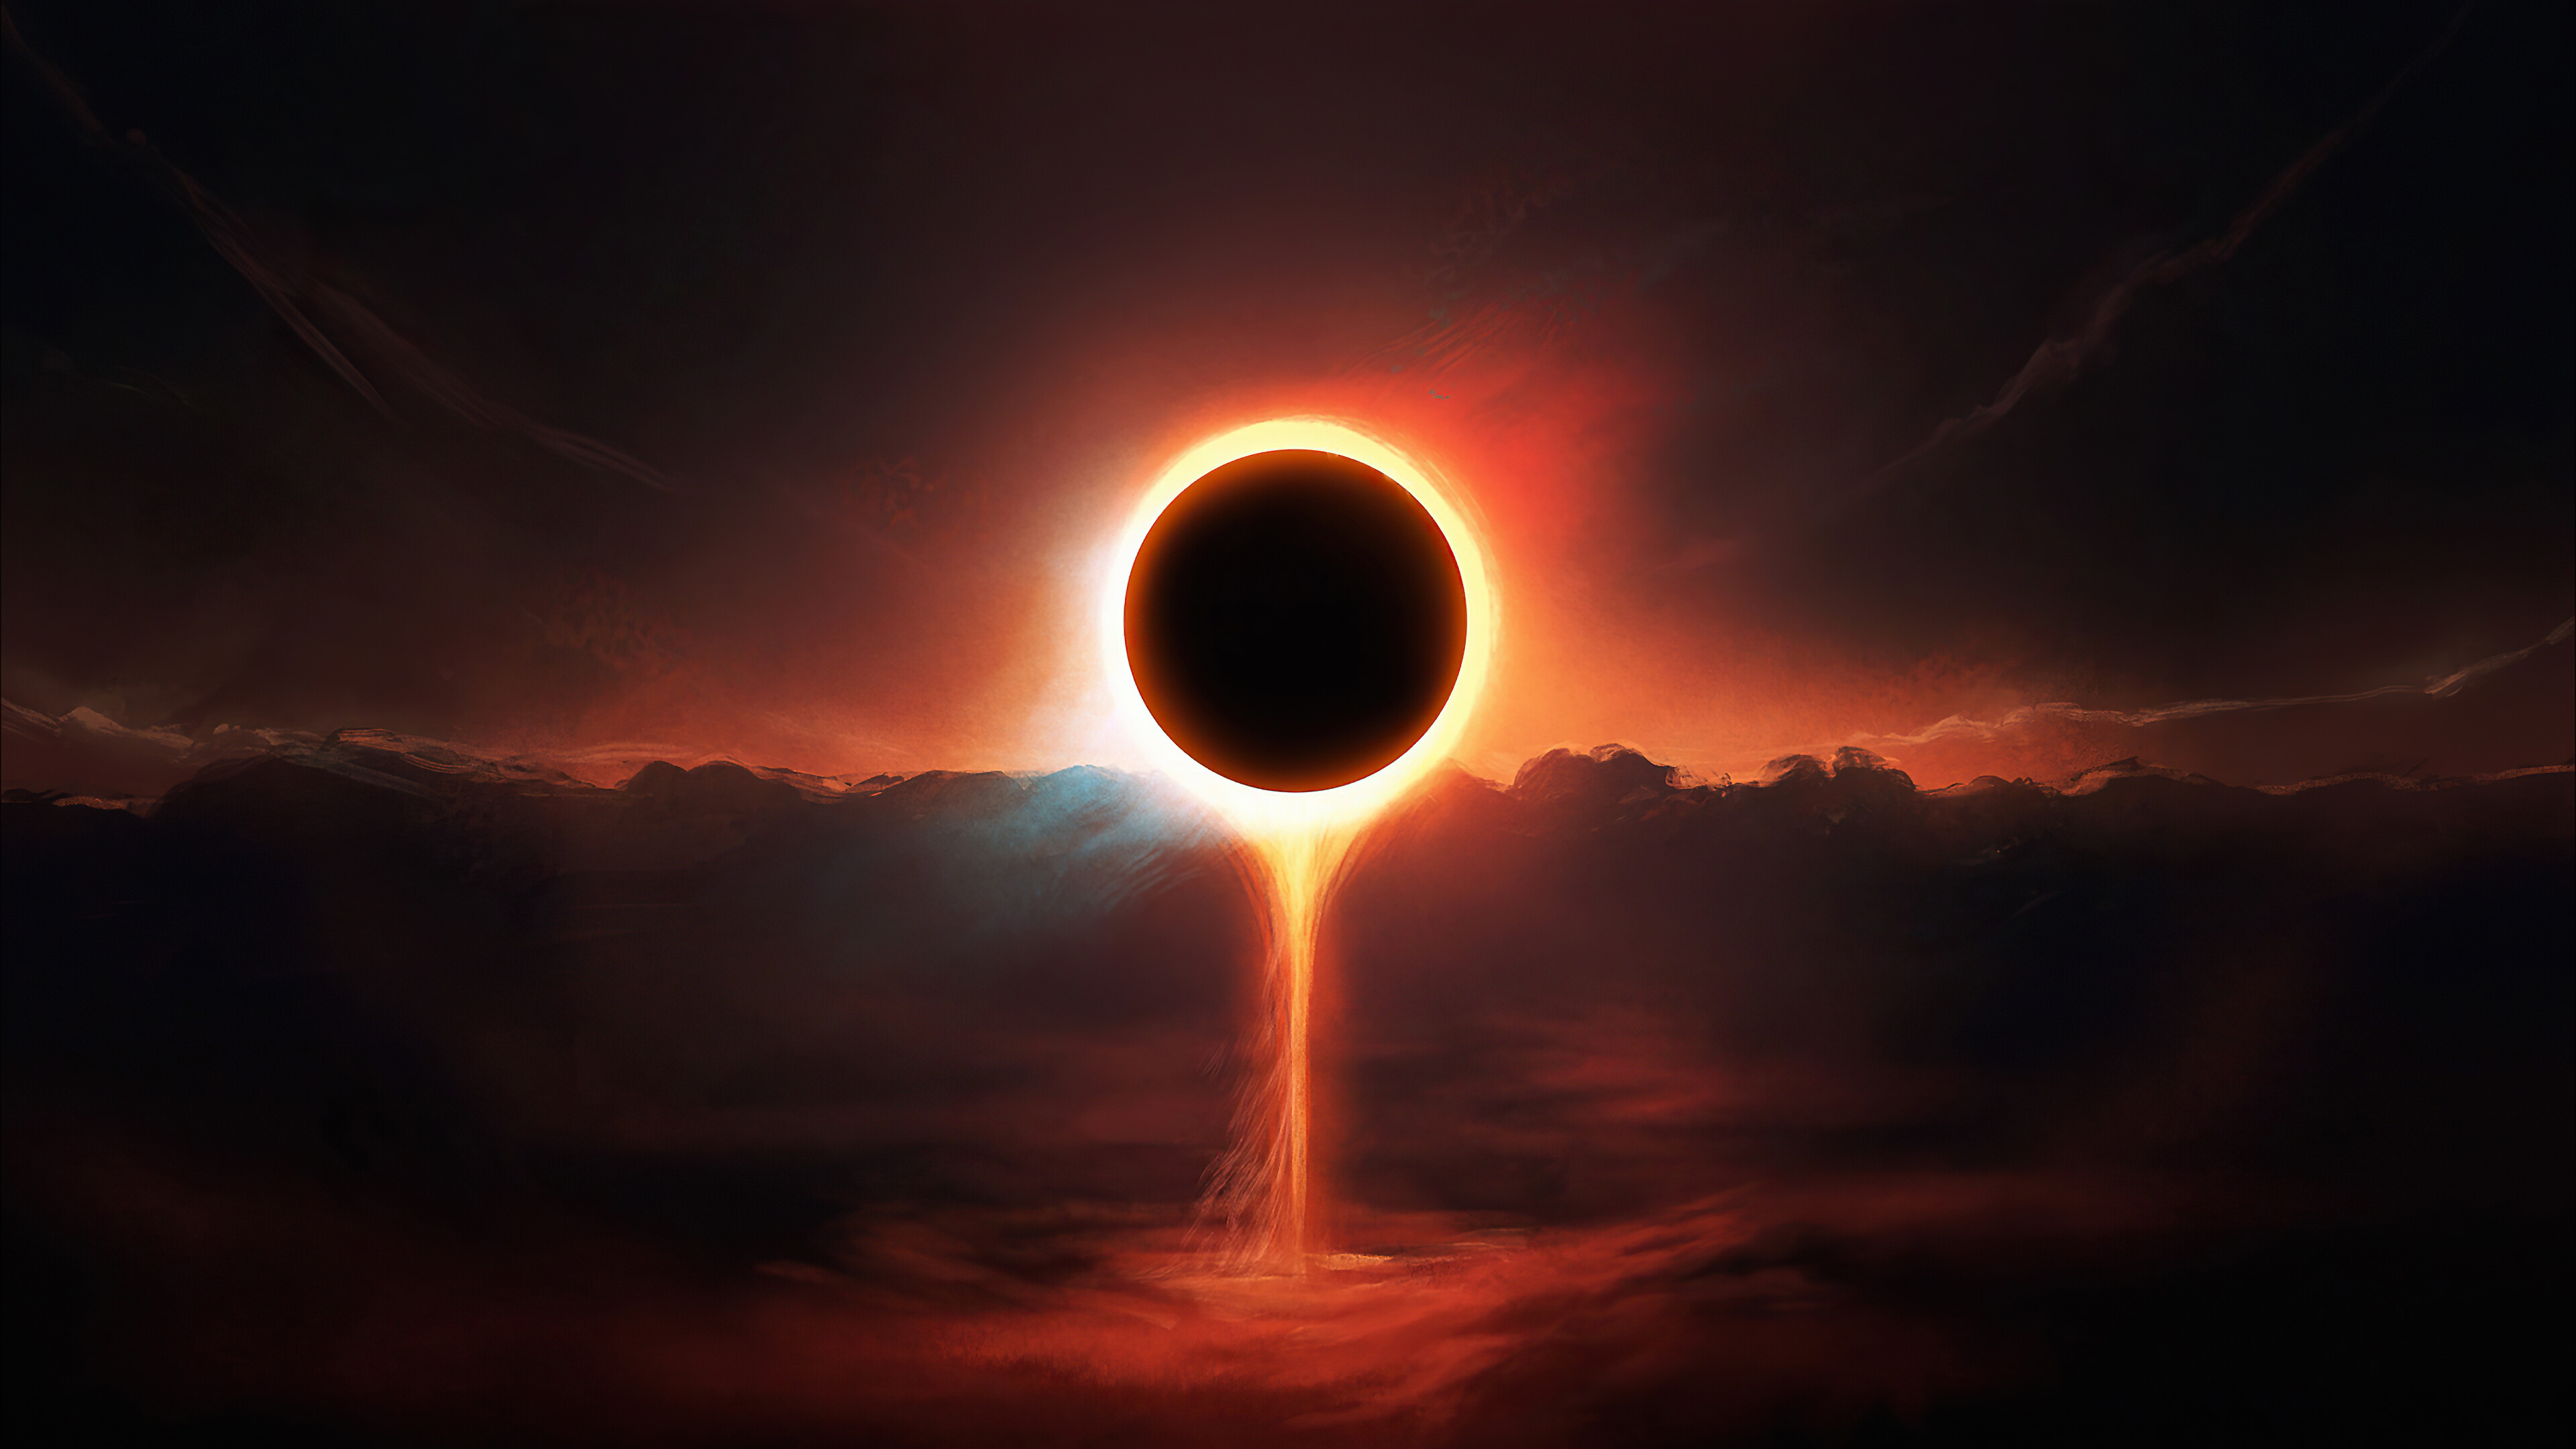 Eclipse Digital Art Scenery 4k Wallpaper